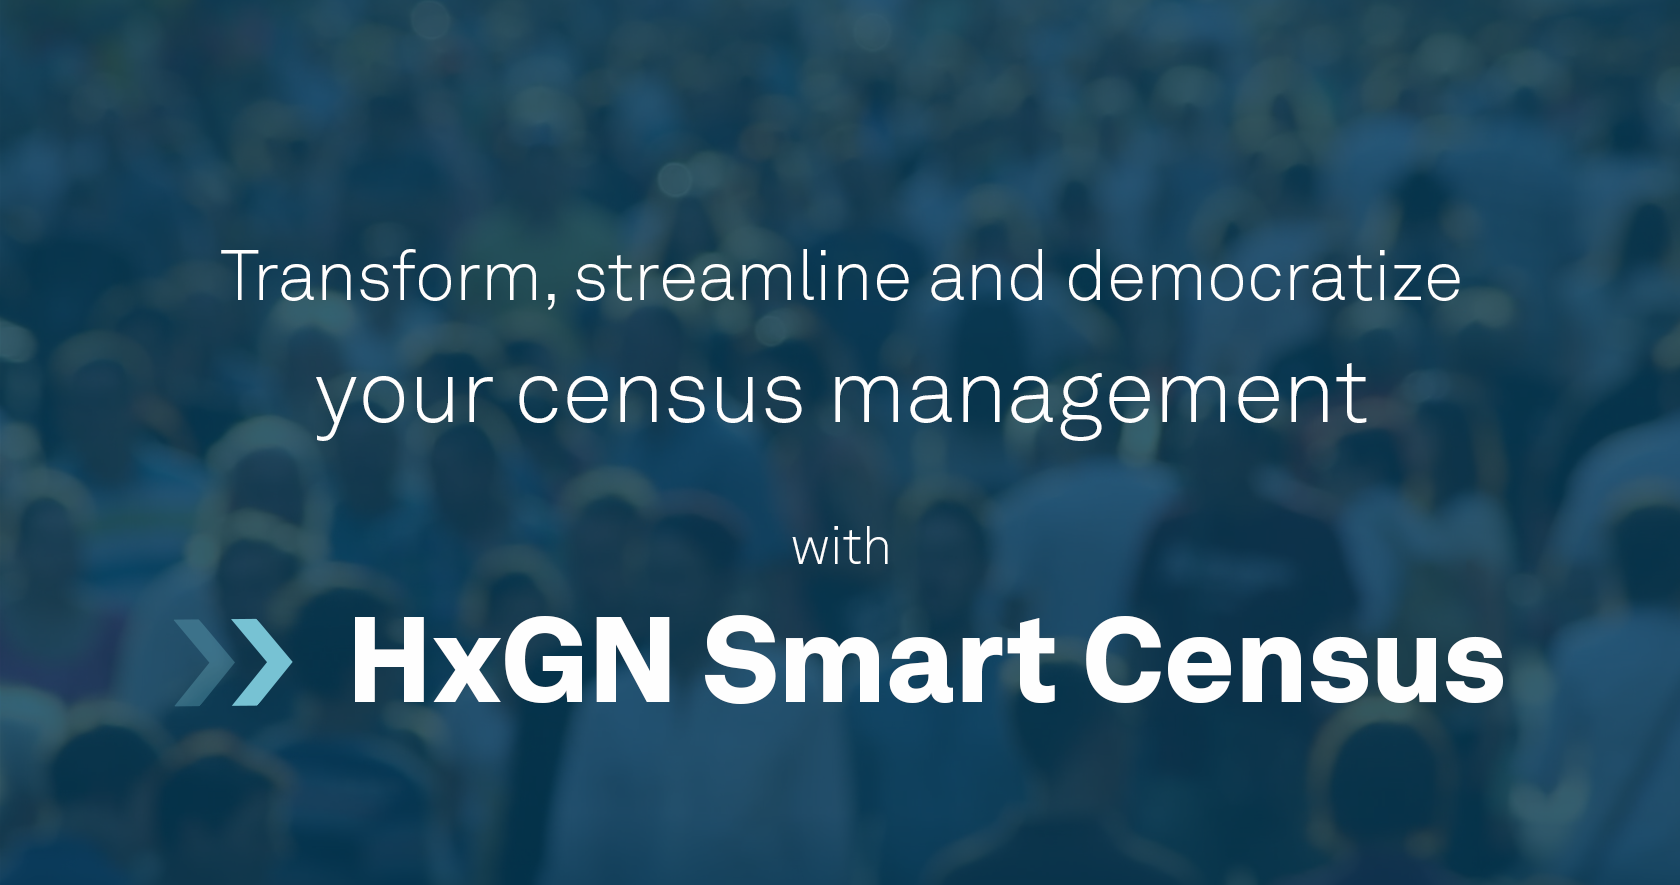 HxGN Smart Census